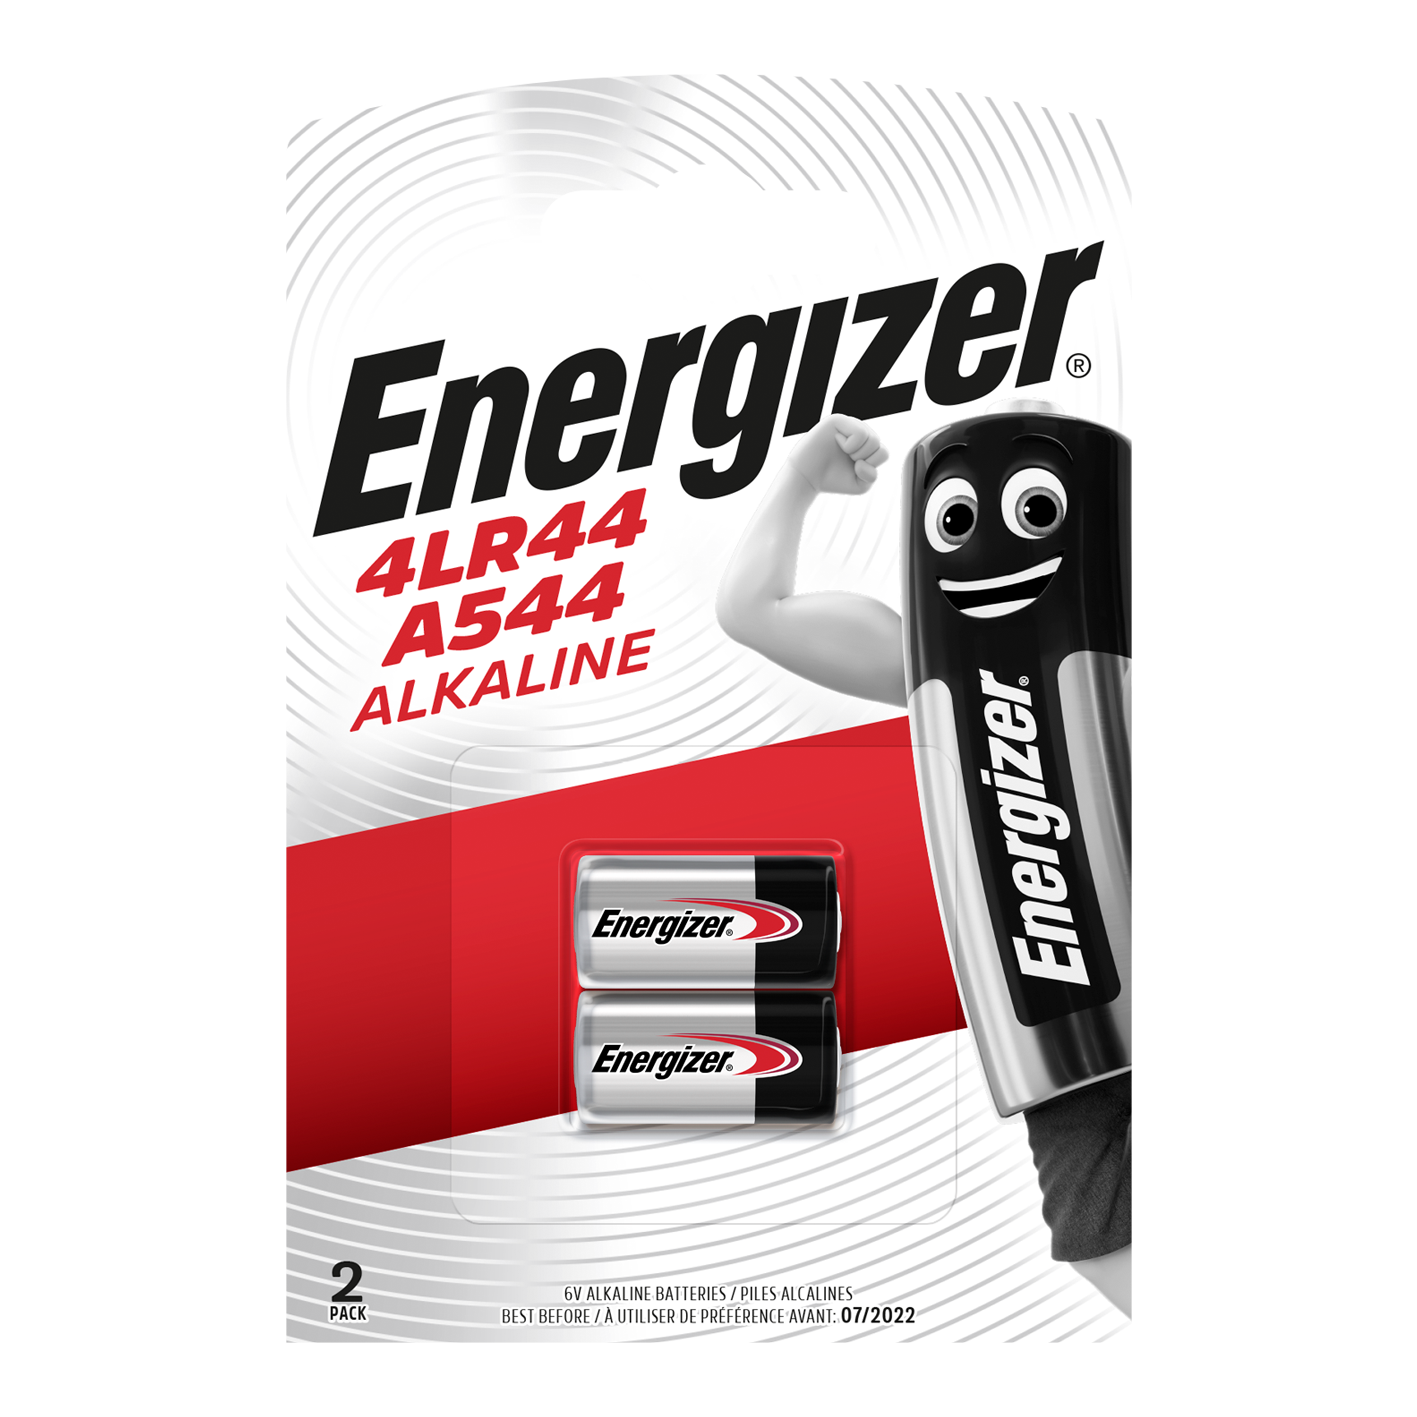 Energizer 4LR44/A544 Alkaline, Pack of 2